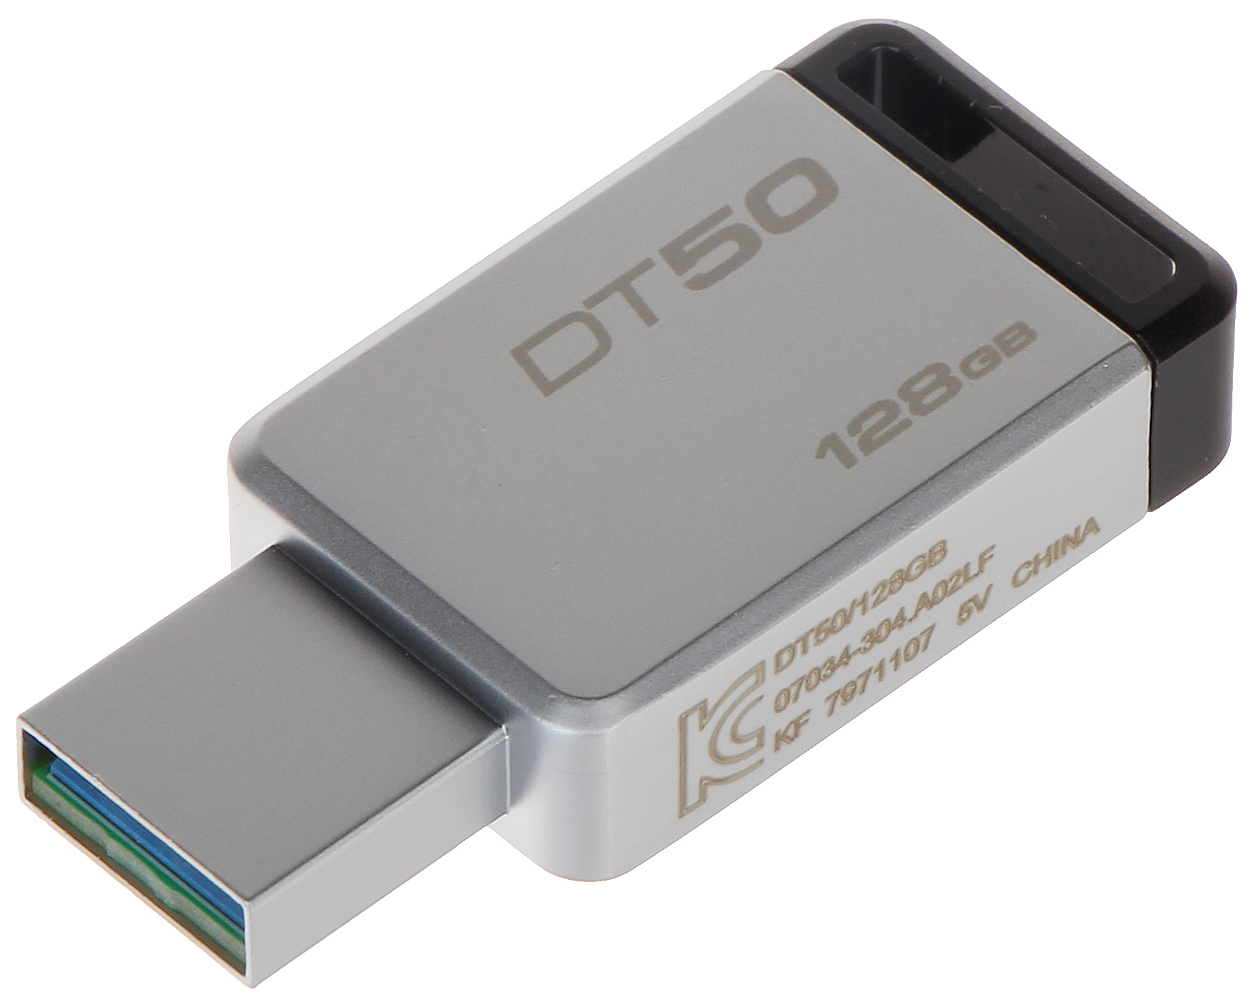 FLASH DRIVE USB 3.0 FD-128/DT50-KING 128 GB USB 3.1/3.... - Flash Drives -  Delta